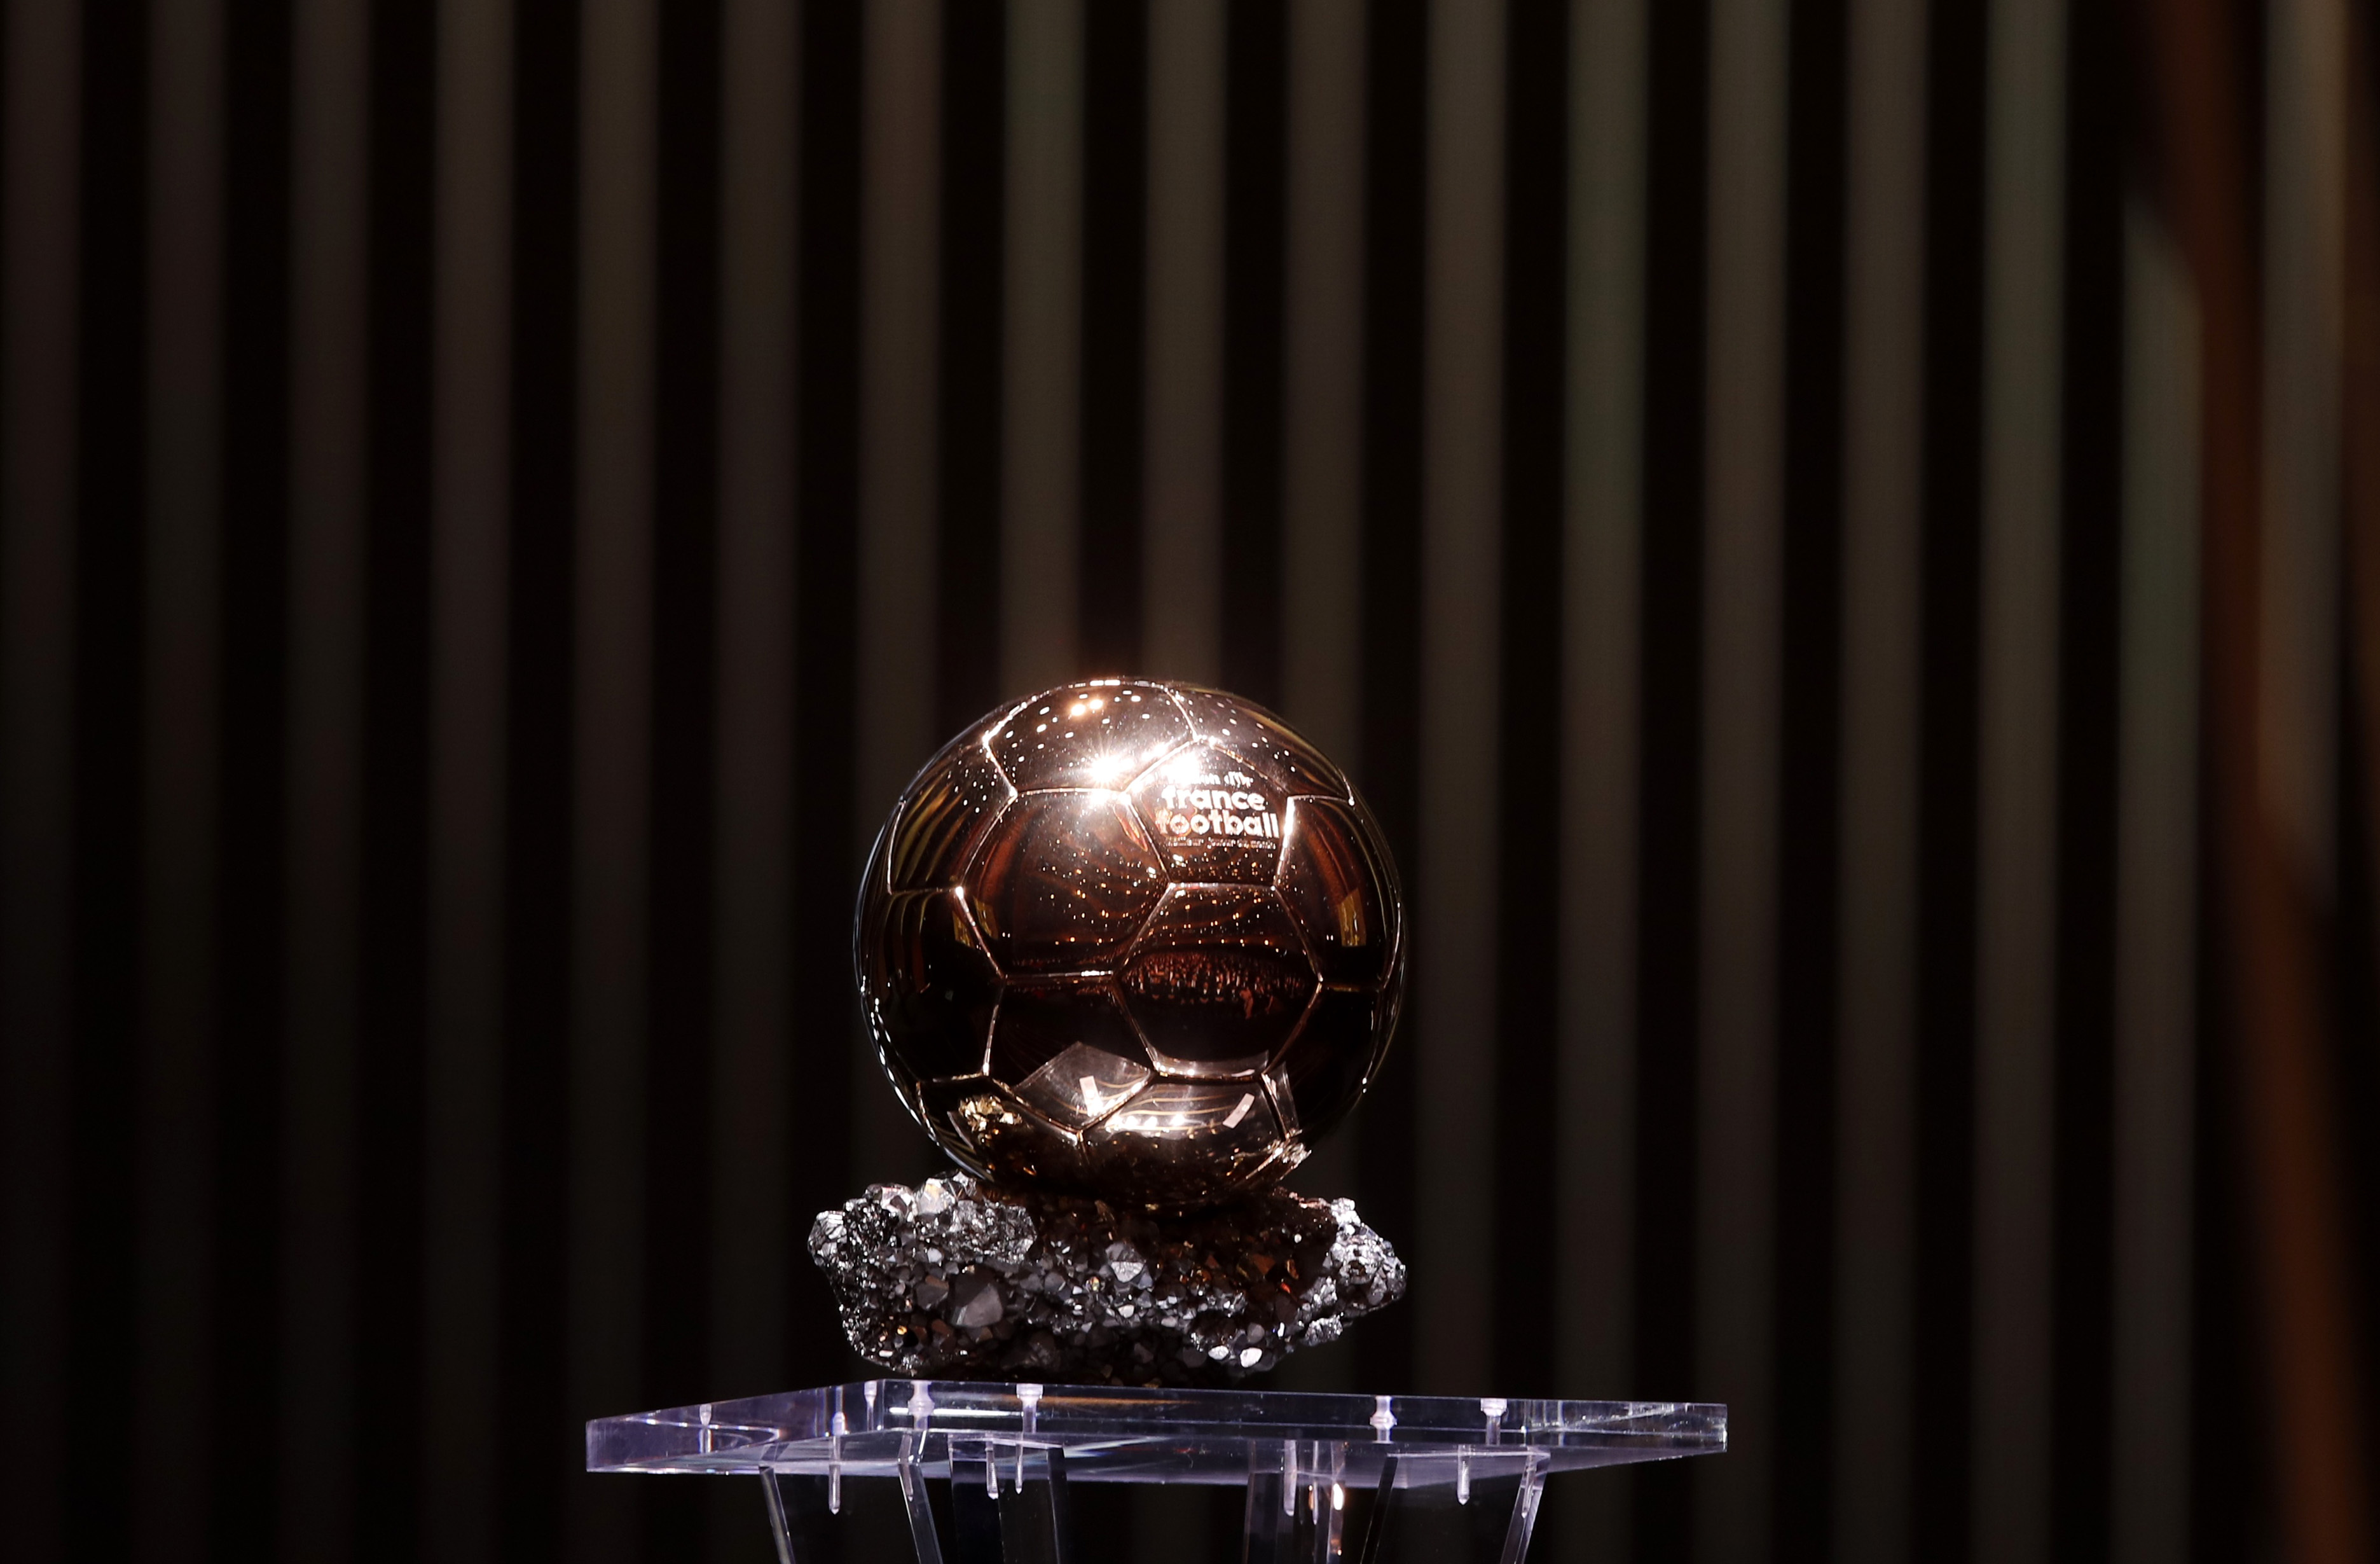 The Ballon d'Or awards